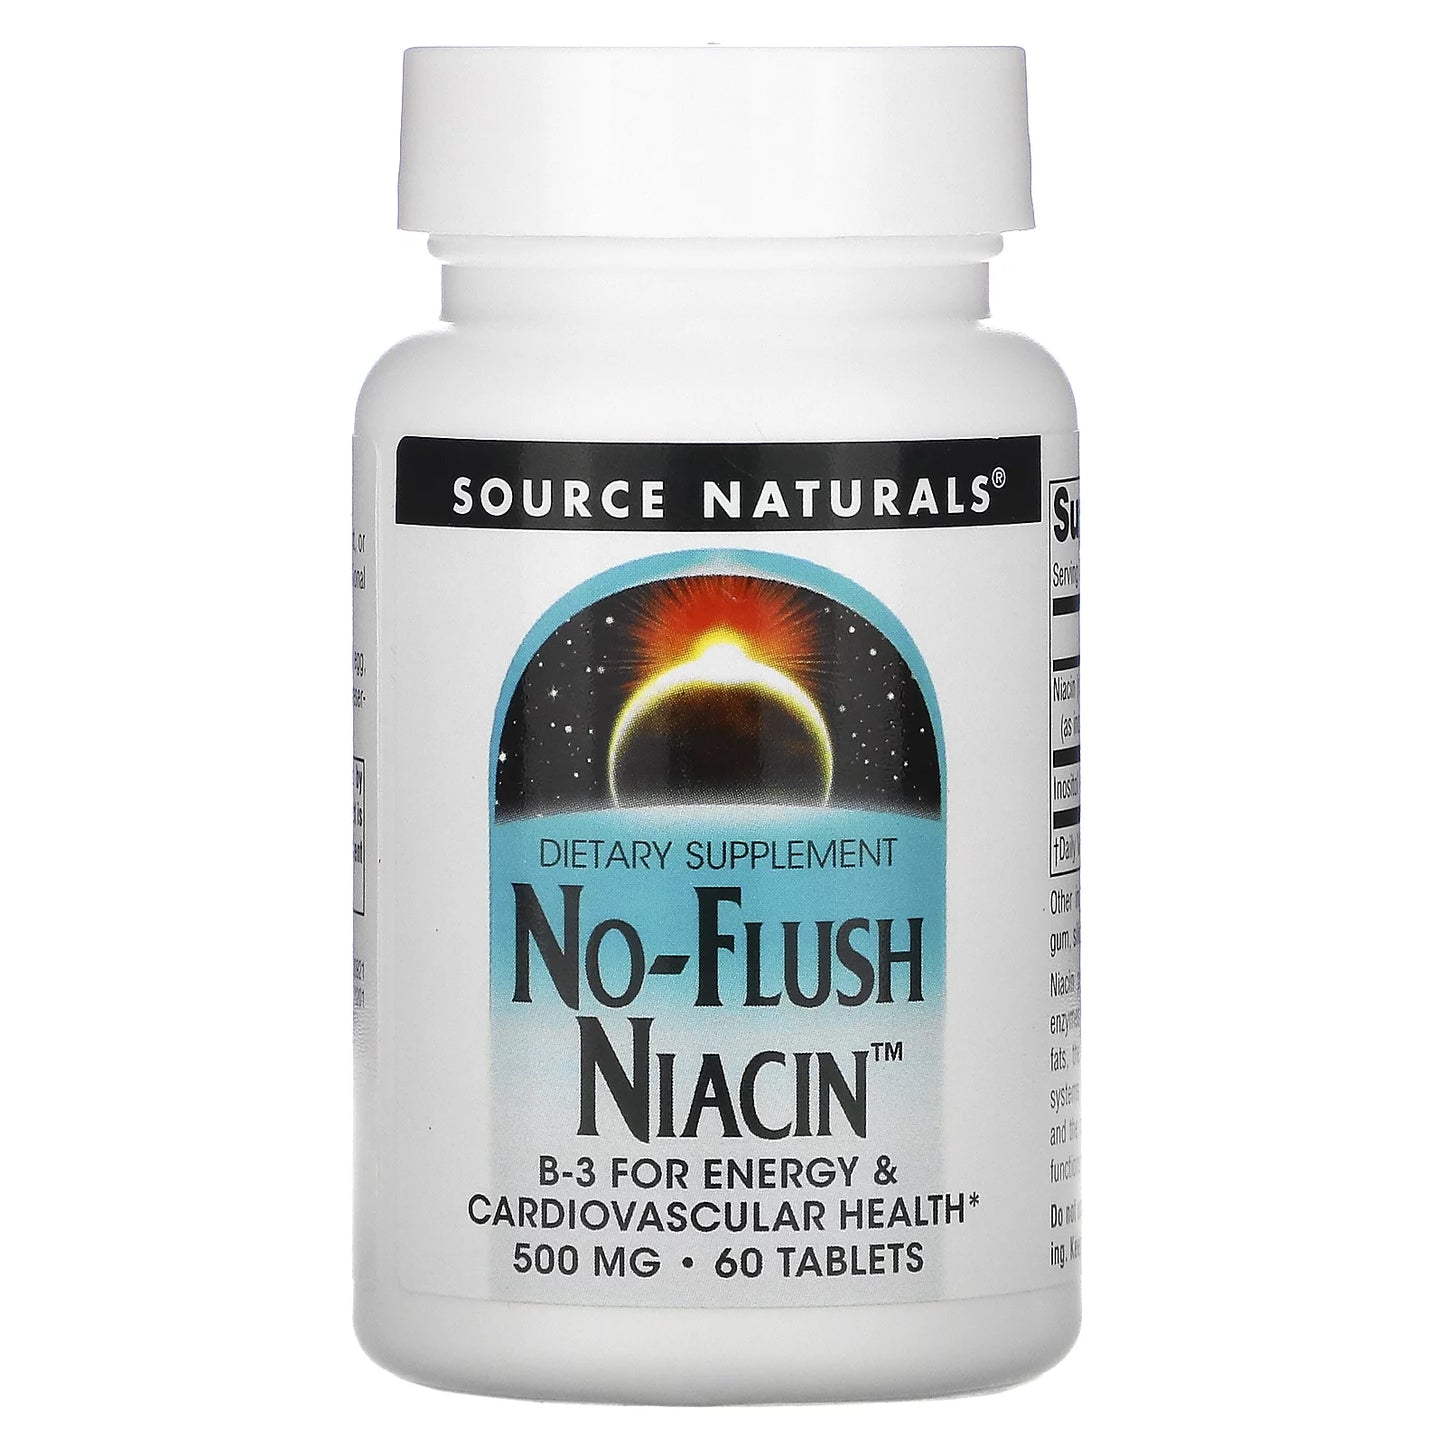 Source Naturals No-Flush Niacin